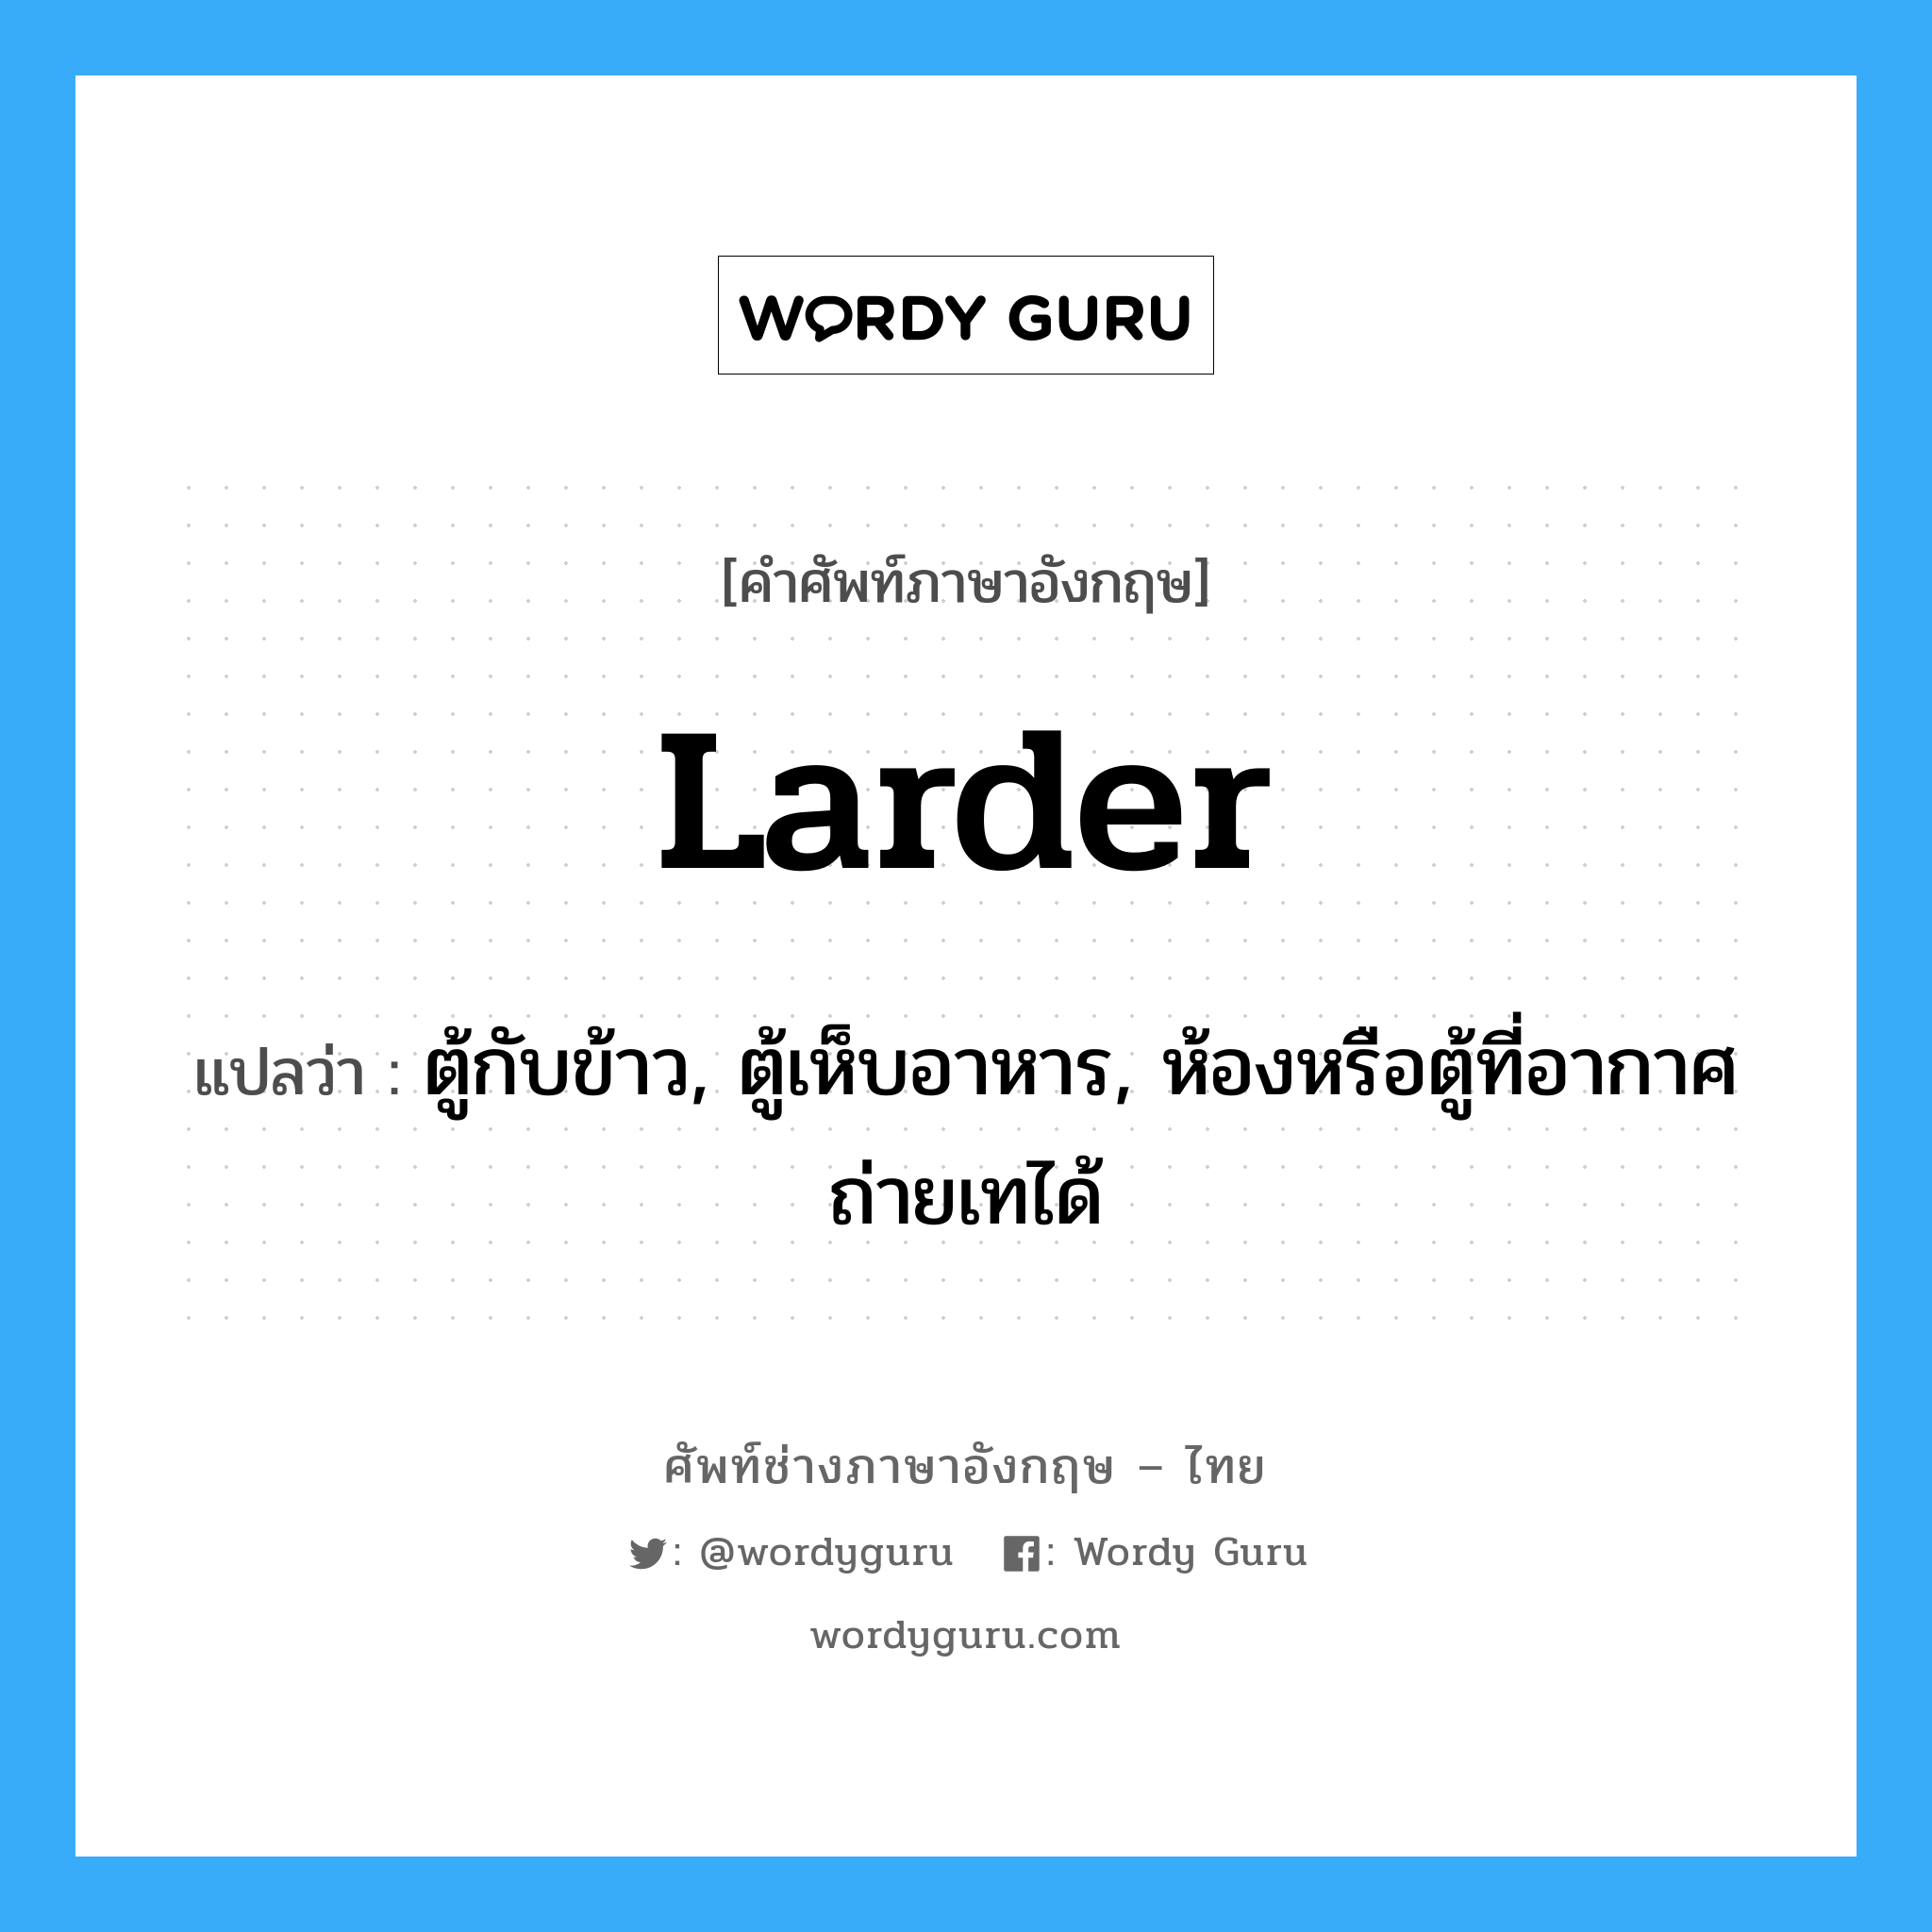 larder แปลว่า?, คำศัพท์ช่างภาษาอังกฤษ - ไทย larder คำศัพท์ภาษาอังกฤษ larder แปลว่า ตู้กับข้าว, ตู้เห็บอาหาร, ห้องหรือตู้ที่อากาศถ่ายเทได้